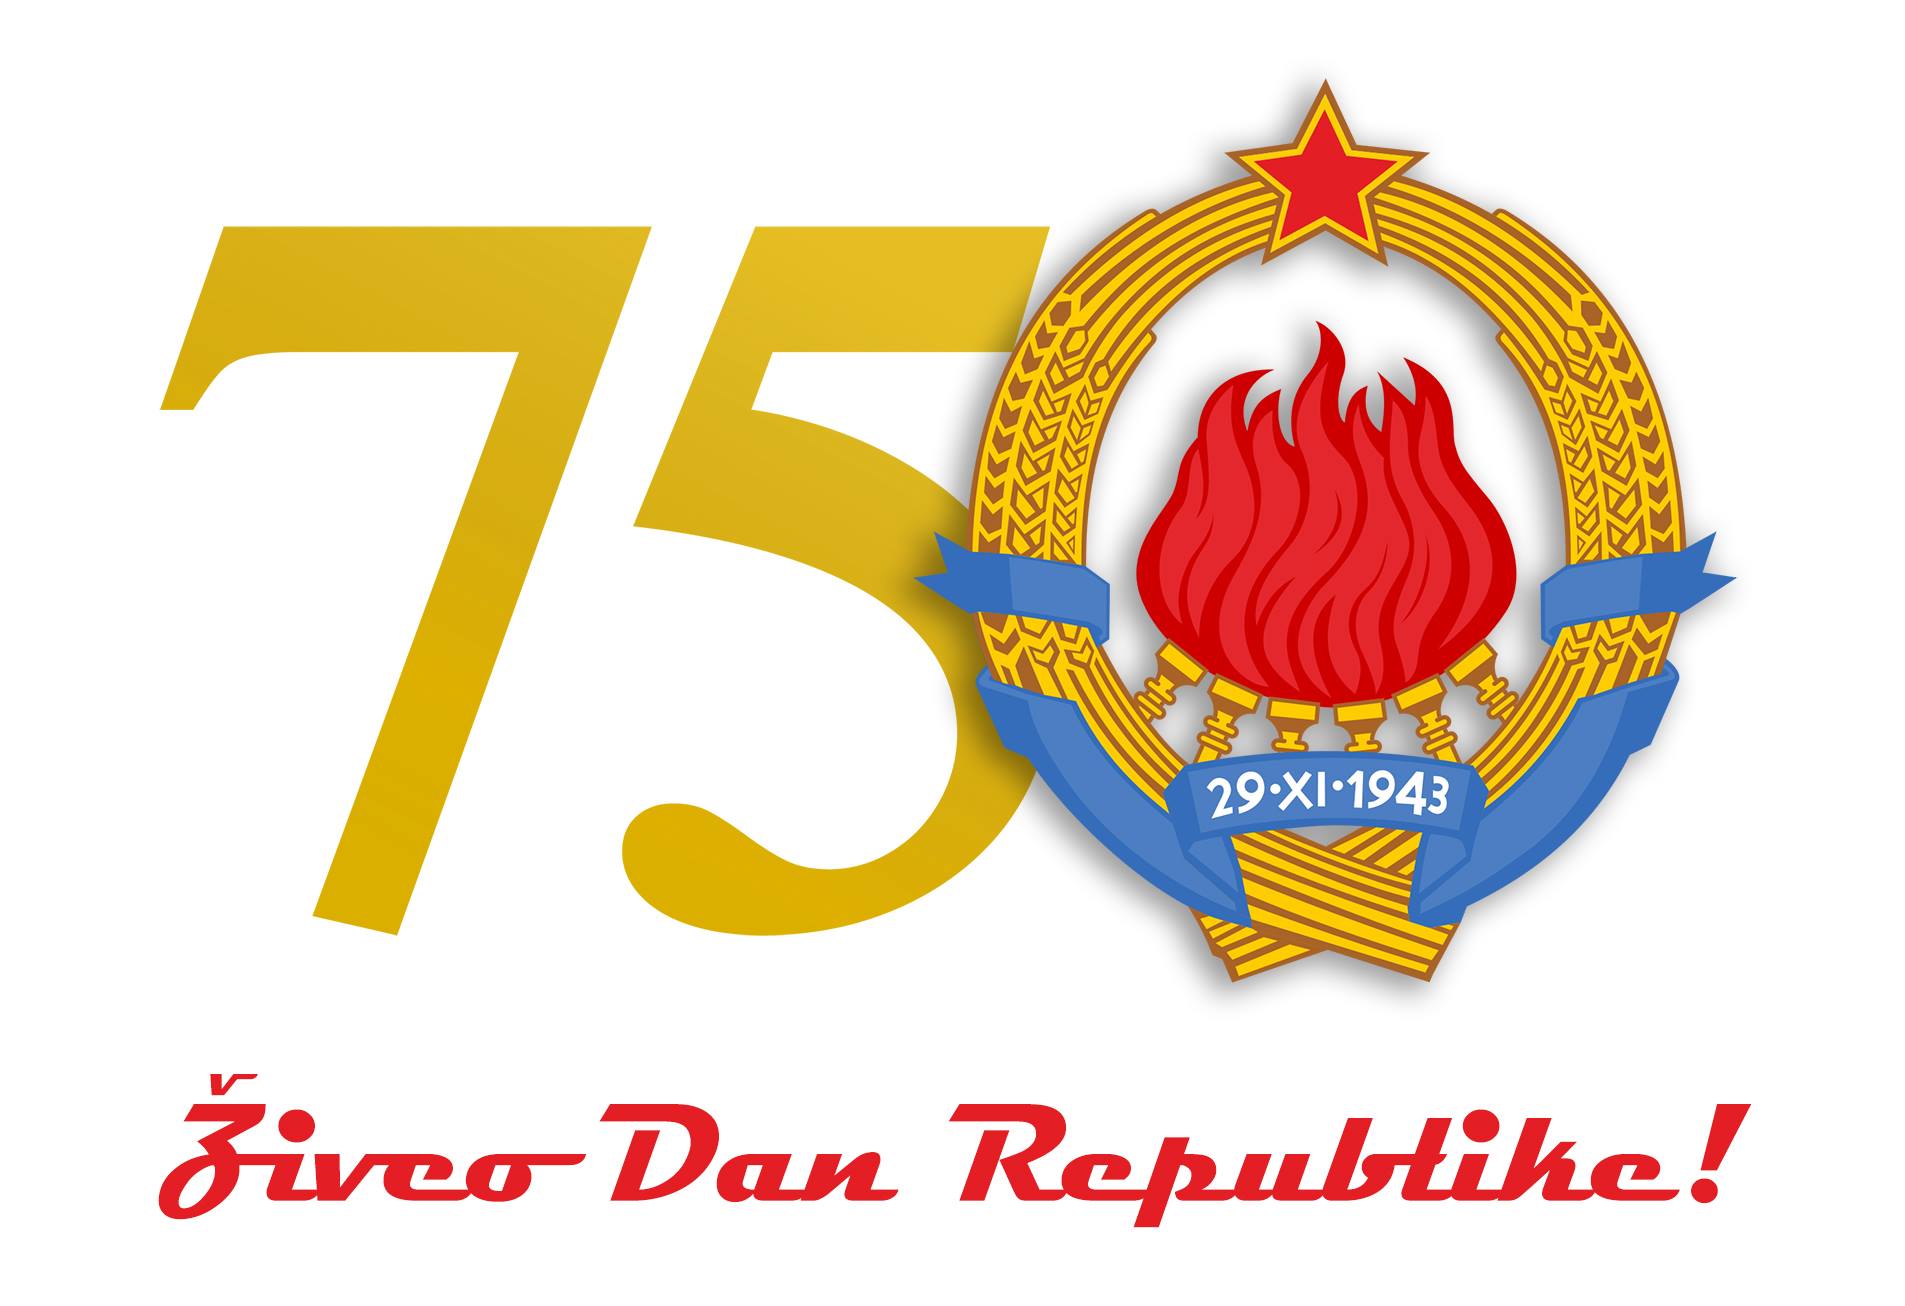 Il y a 75 ans, était fondé le Comité national de libération de la Yougoslavie